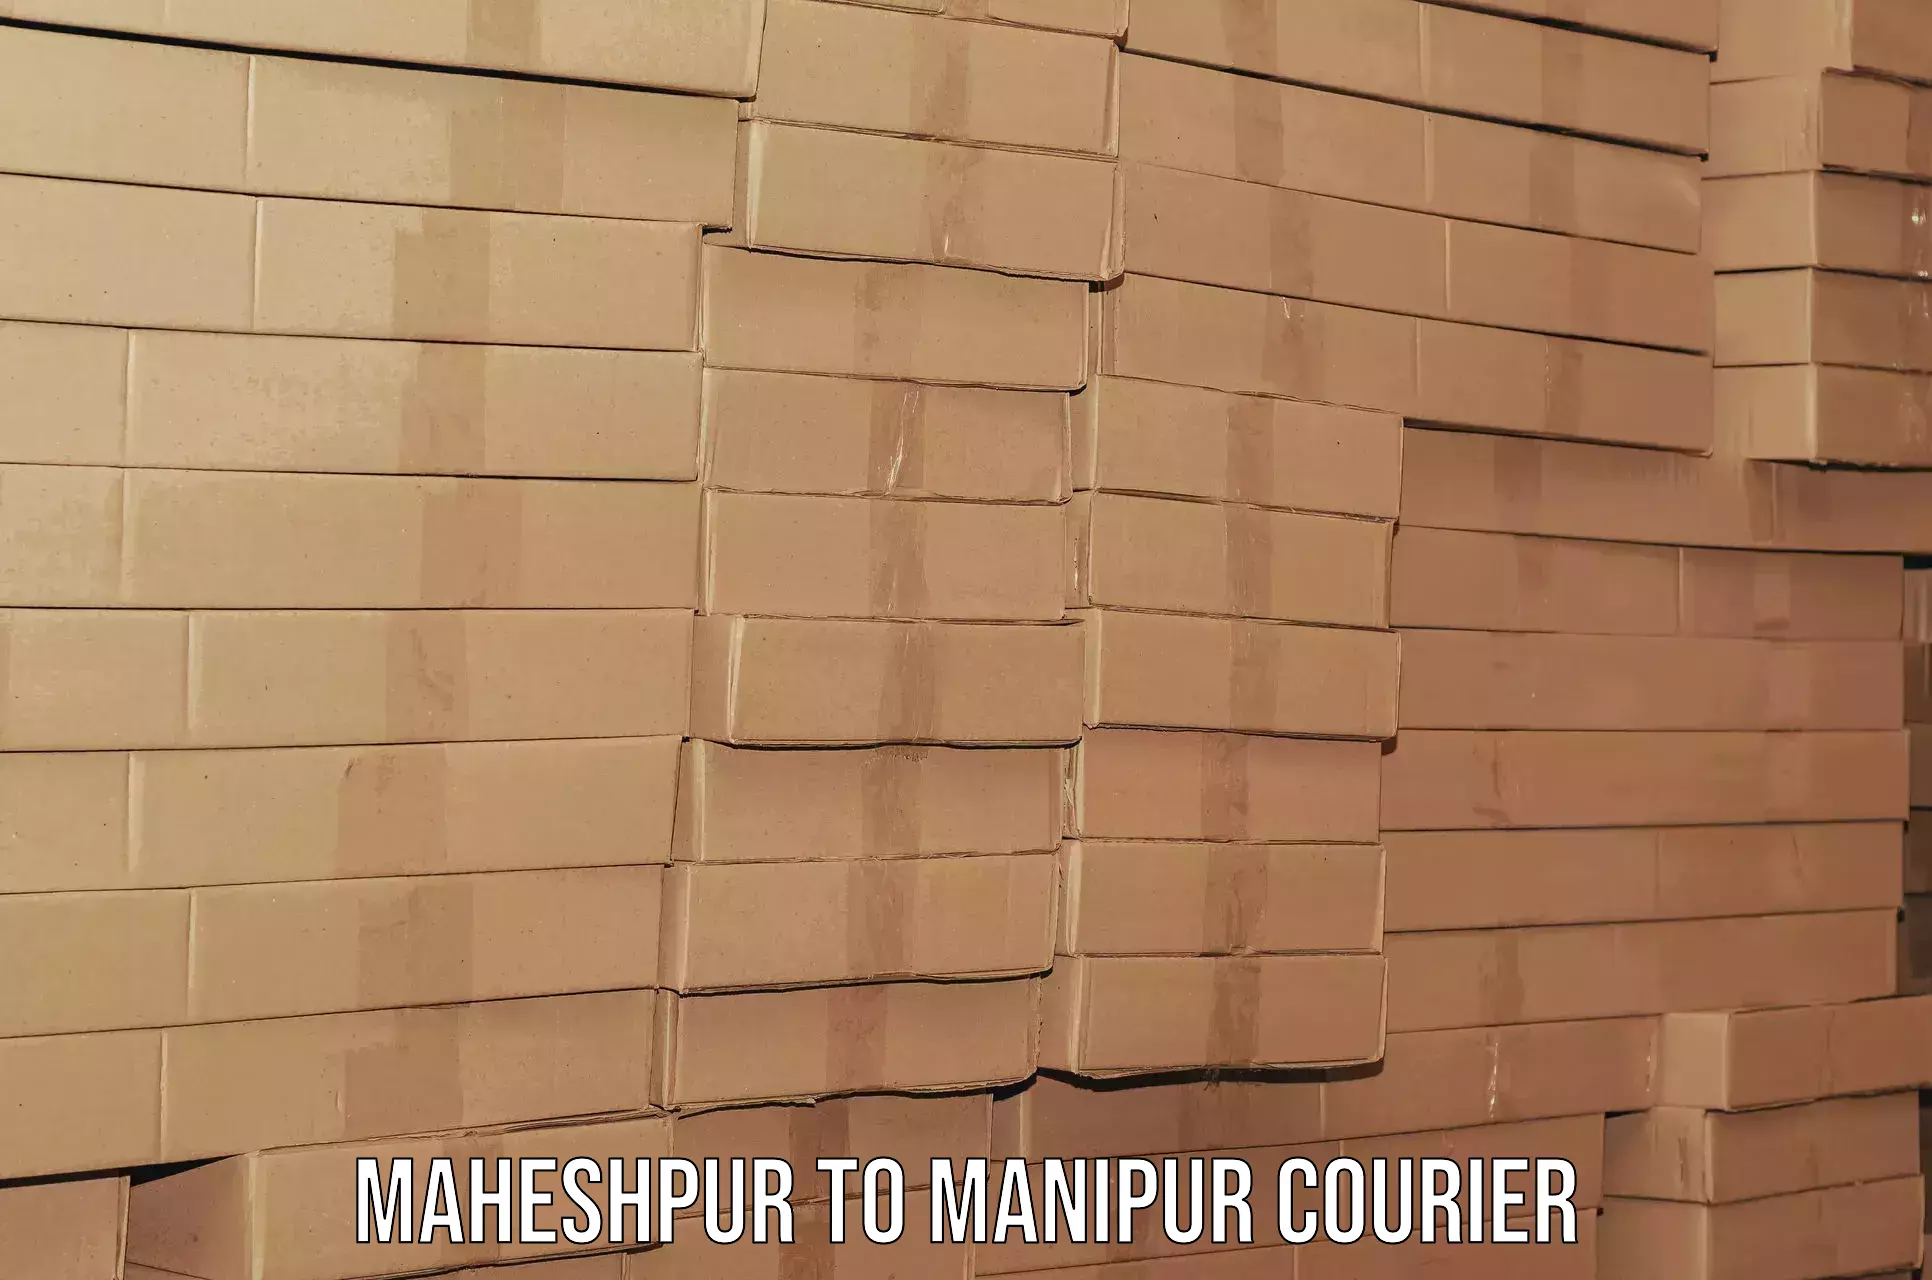 Moving and handling services Maheshpur to Senapati